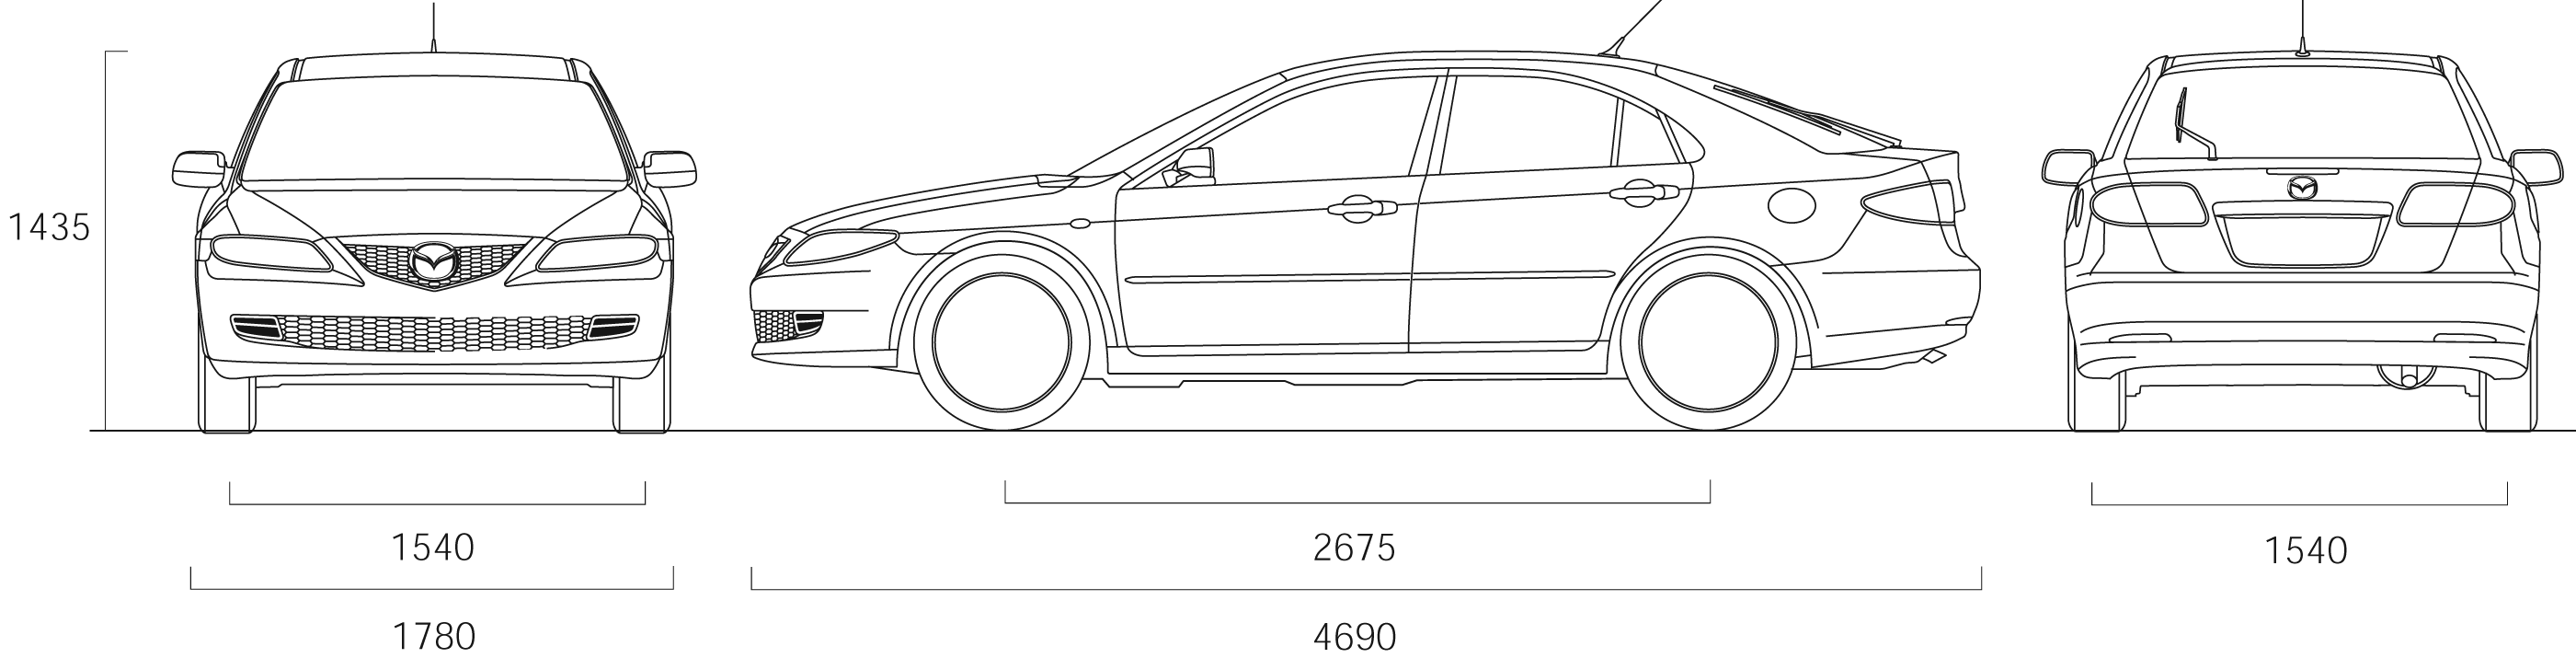 2007 Mazda 6 Hatchback blueprints free - Outlines